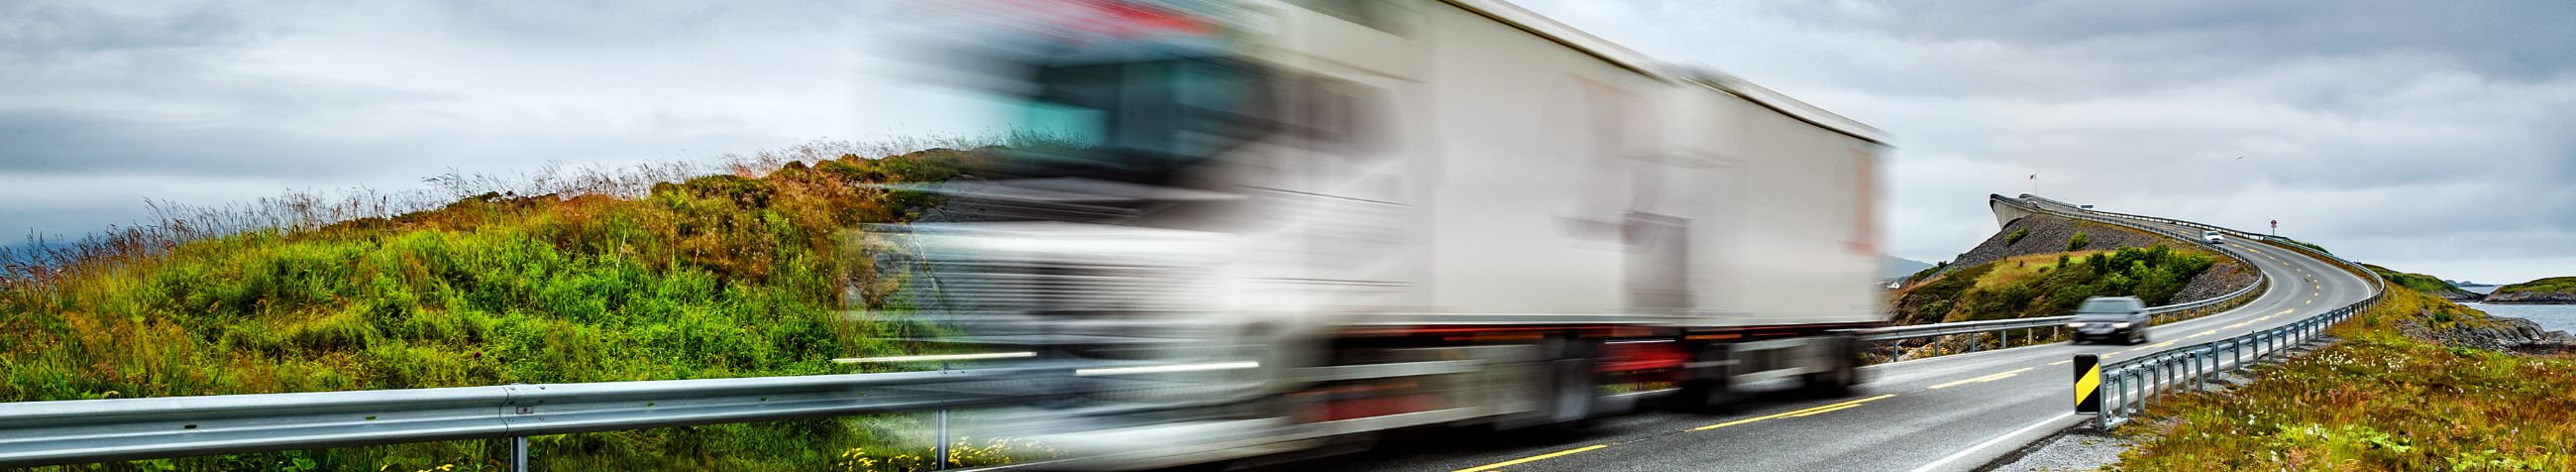 Pakume täisspektri rahvusvahelisi kaubaveoteenuseid, sealhulgas kasutatud veoautoosade müüki ja puksiirteenuseid üle Eesti ja kaugemal.